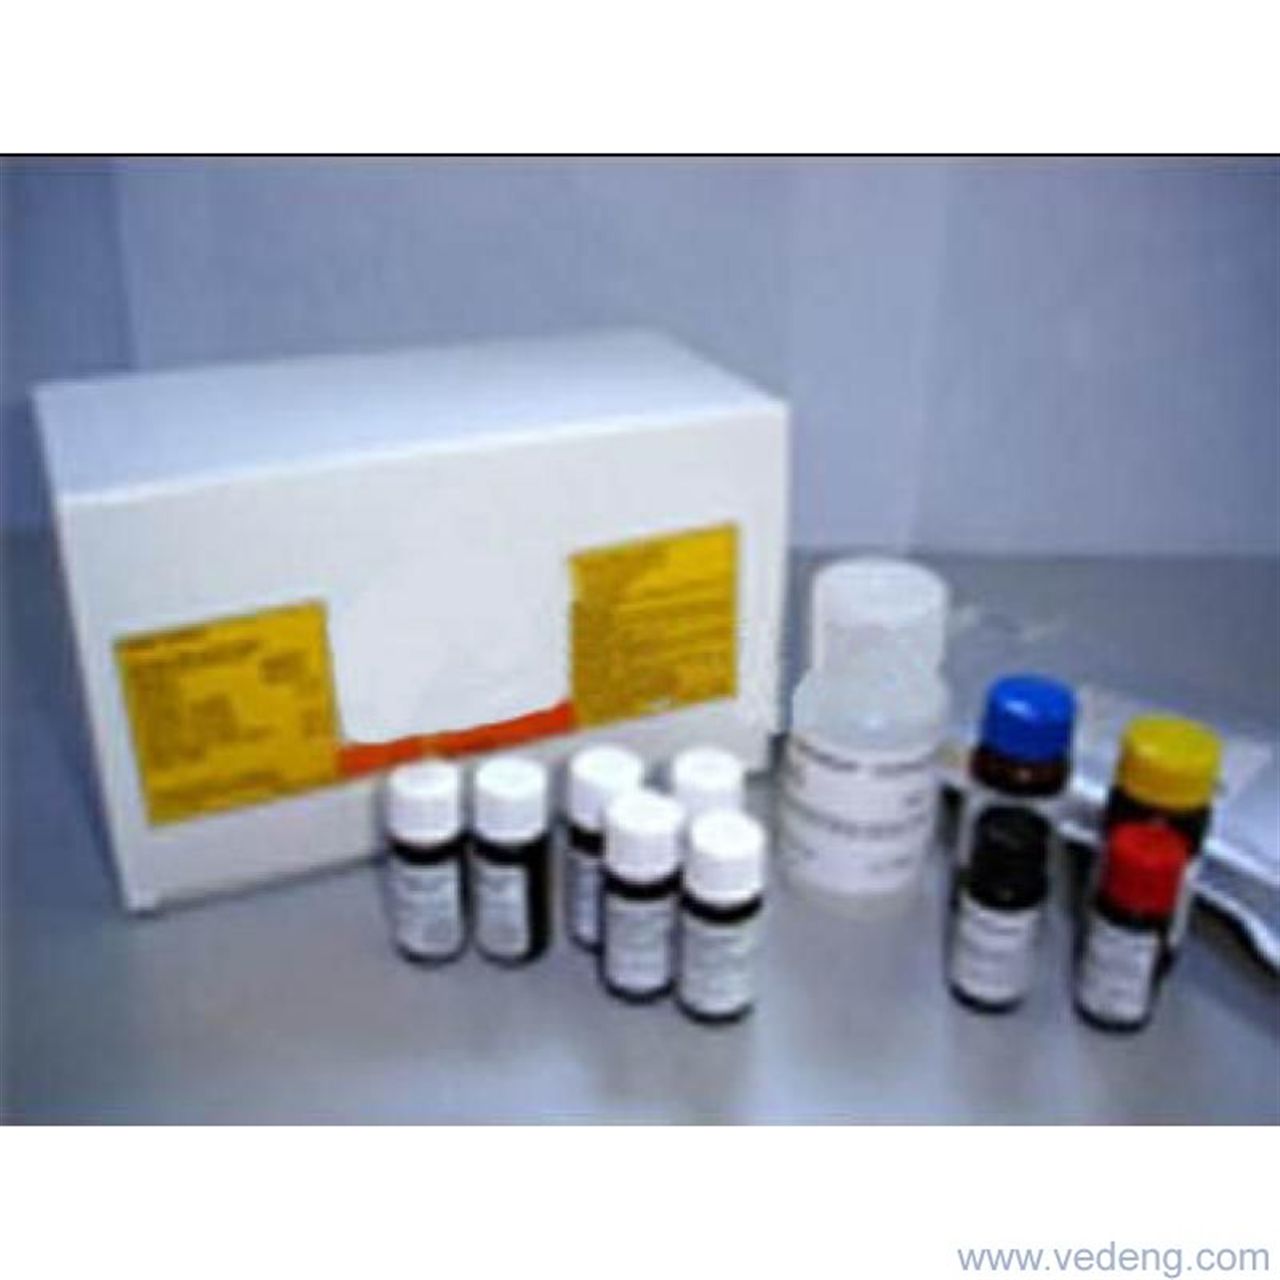 小鼠趋化素(CHEM)ELISA试剂盒 